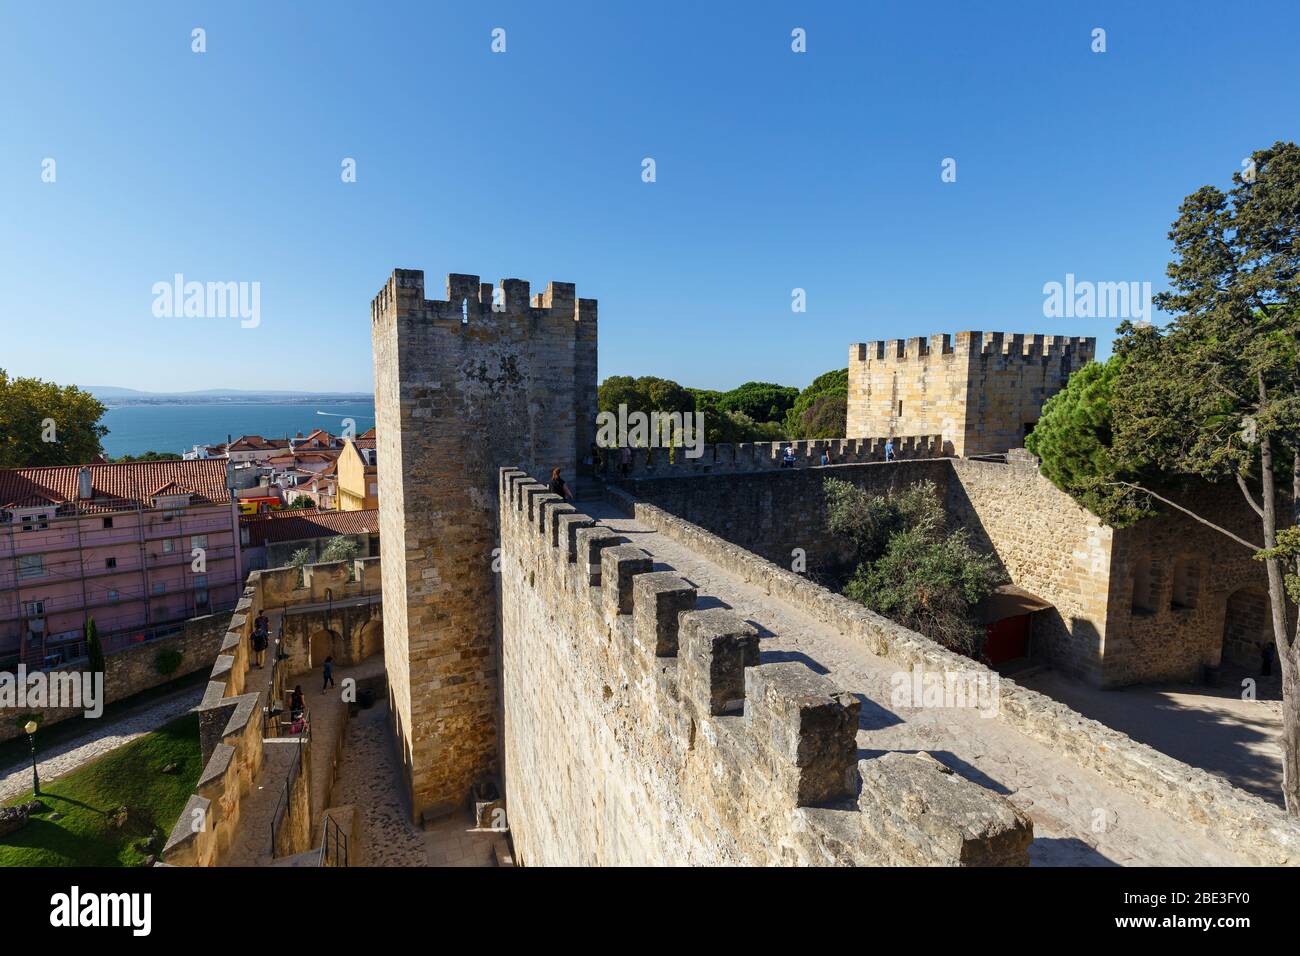 Die umliegenden Mauern und Türme des historischen Castelo de Sao Jorge (Castelo de Sao Jorge) in Lissabon, Portugal, an einem sonnigen Tag. Stockfoto